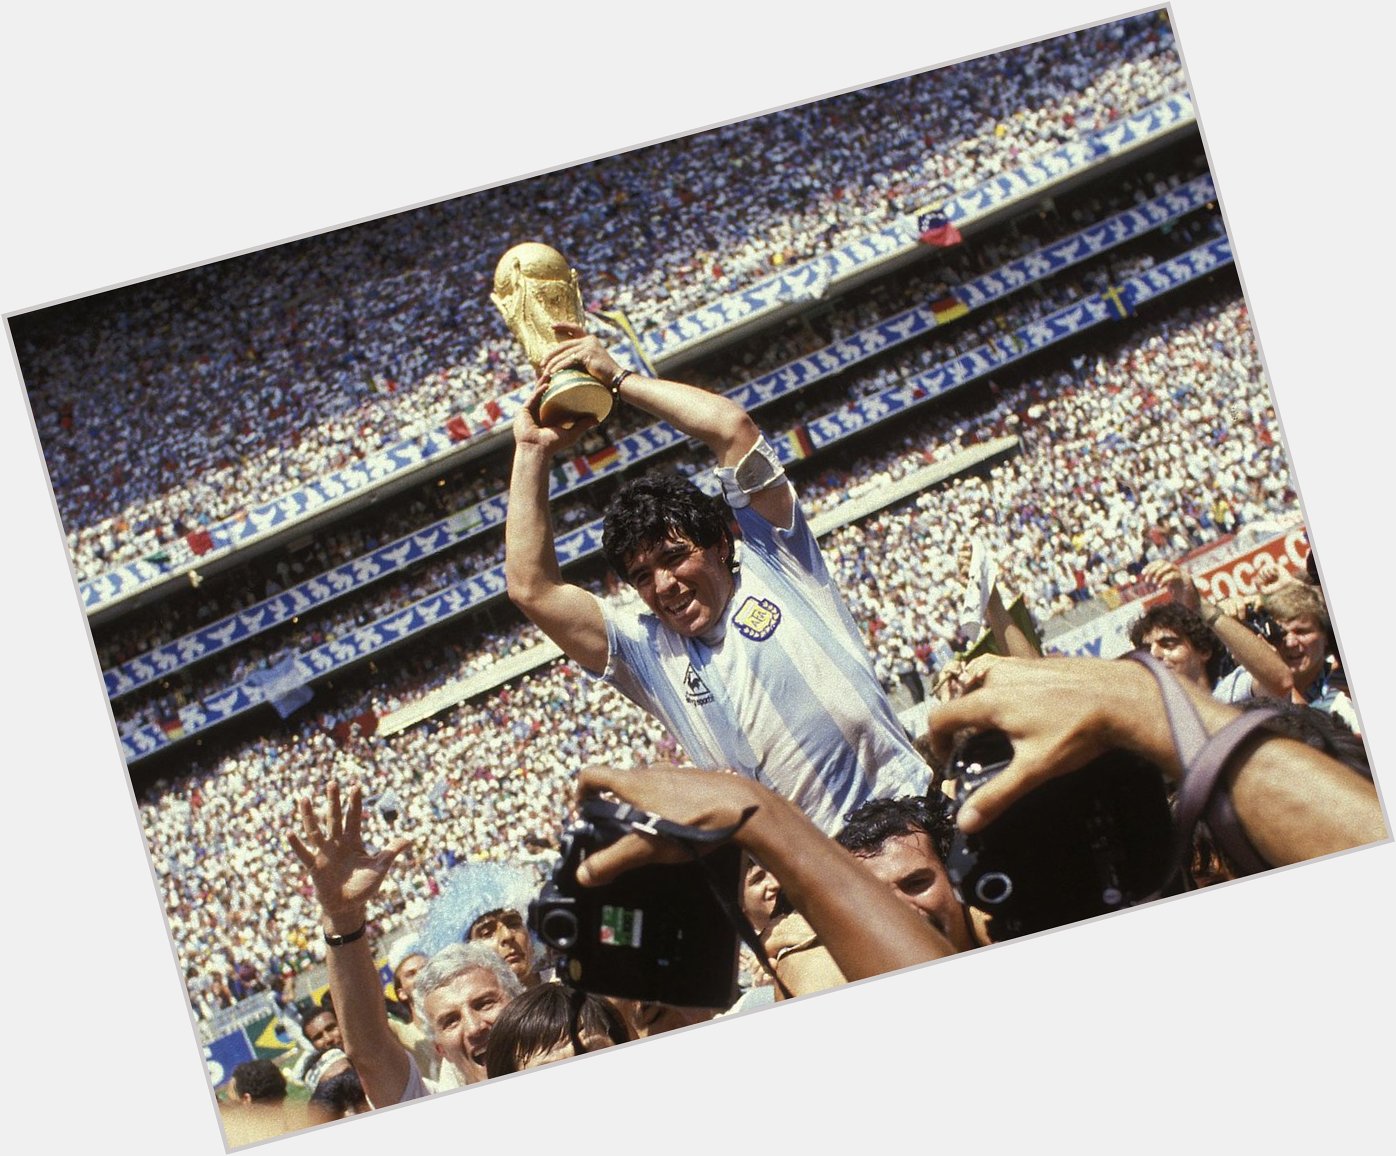 Happy birthday to a legend, Diego Maradona 